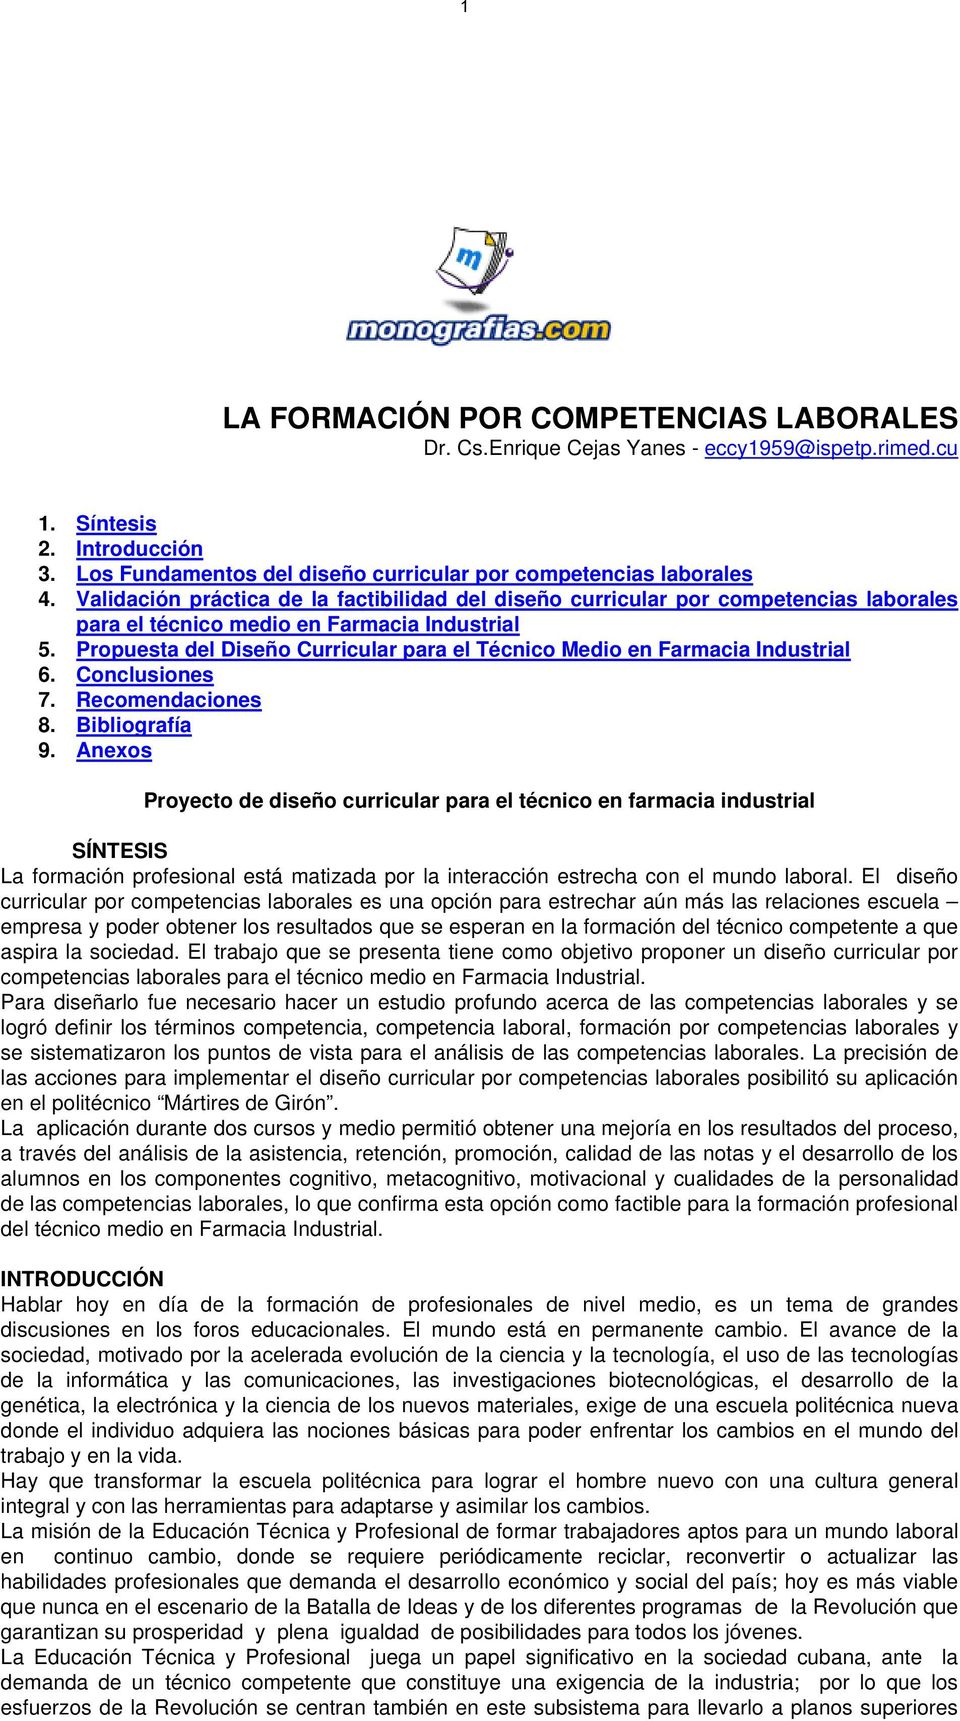 Propuesta del Diseño Curricular para el Técnico Medio en Farmacia Industrial 6. Conclusiones 7. Recomendaciones 8. Bibliografía 9.